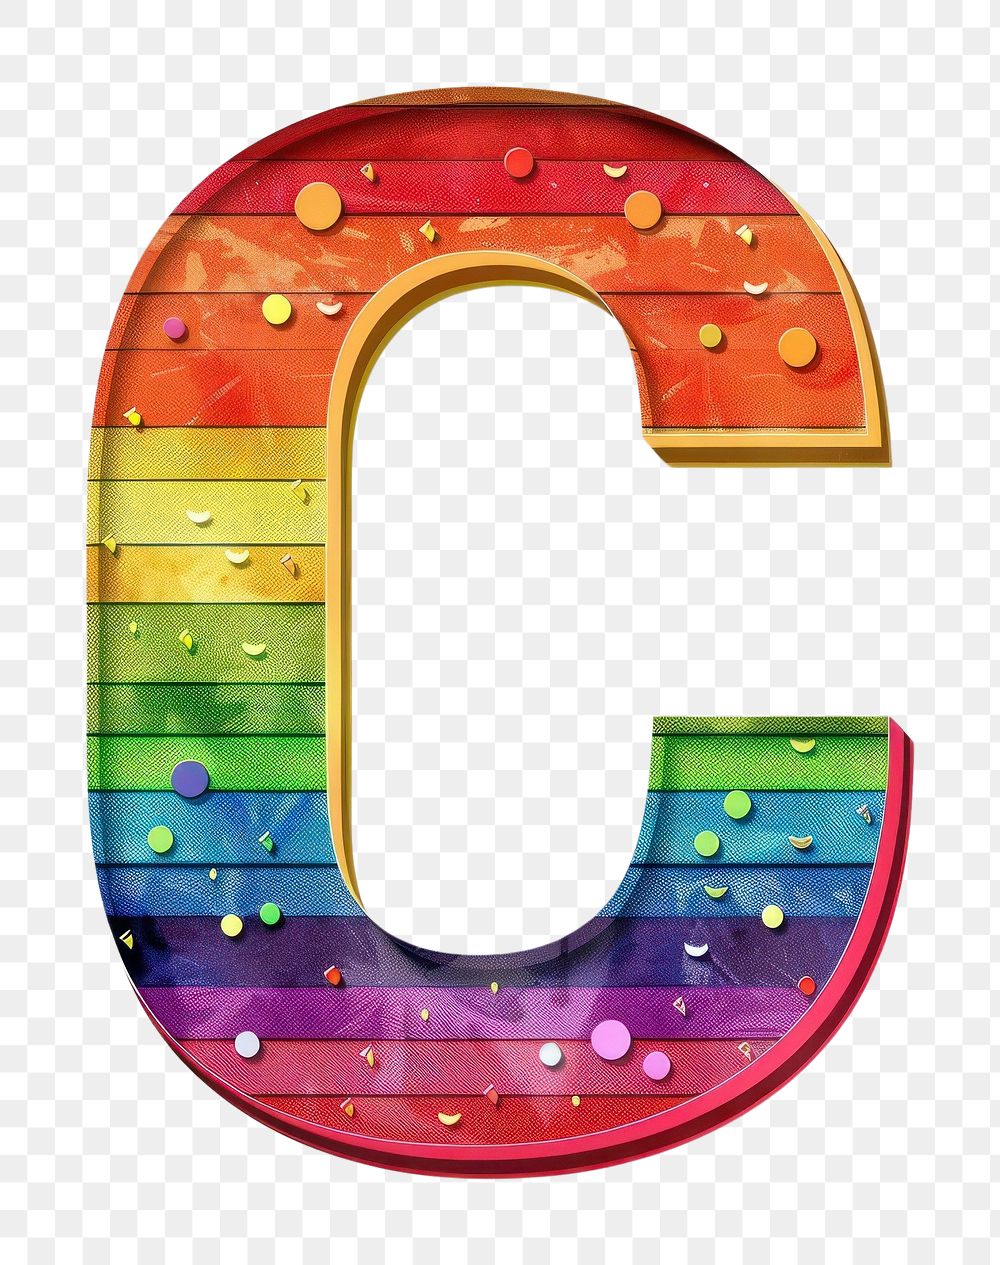 Rainbow with alphabet C furniture number symbol.